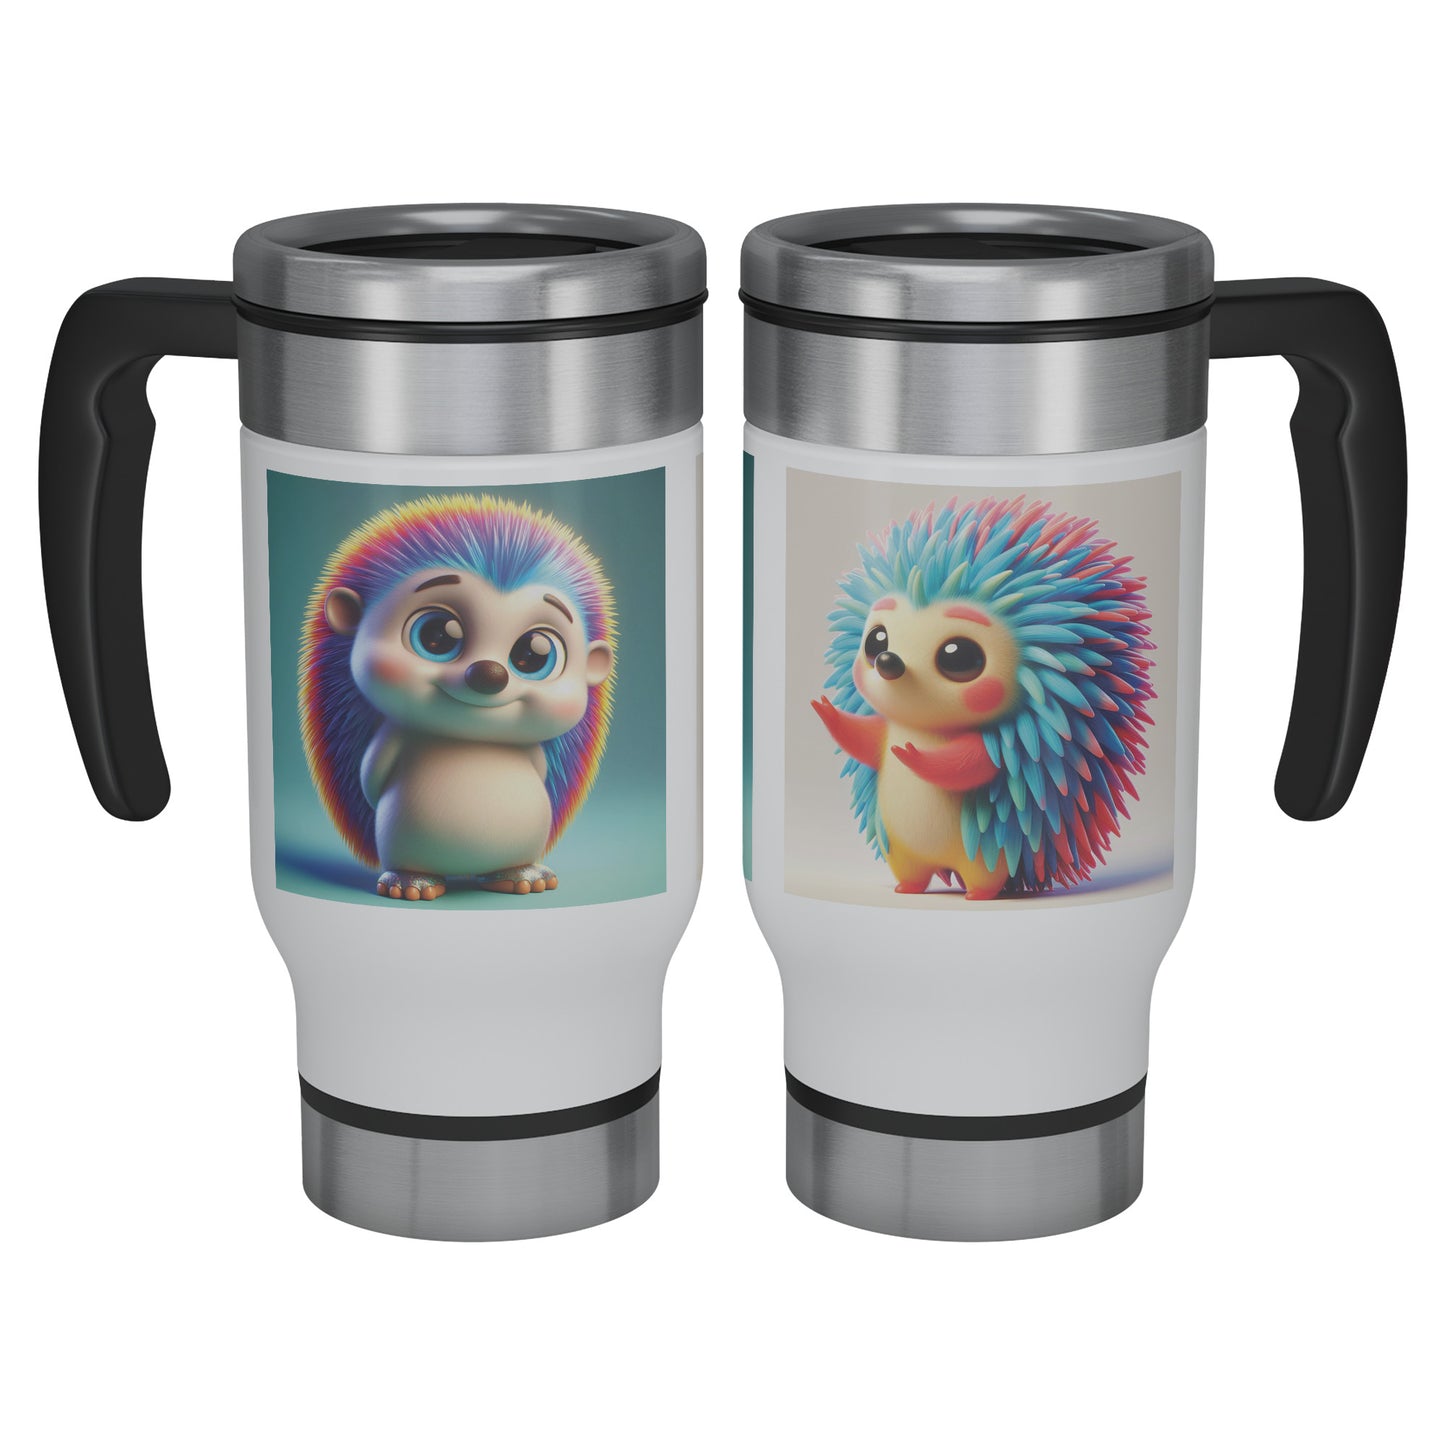 Cute & Adorable Mammals - 14oz Travel Mug - Hedgehog #1